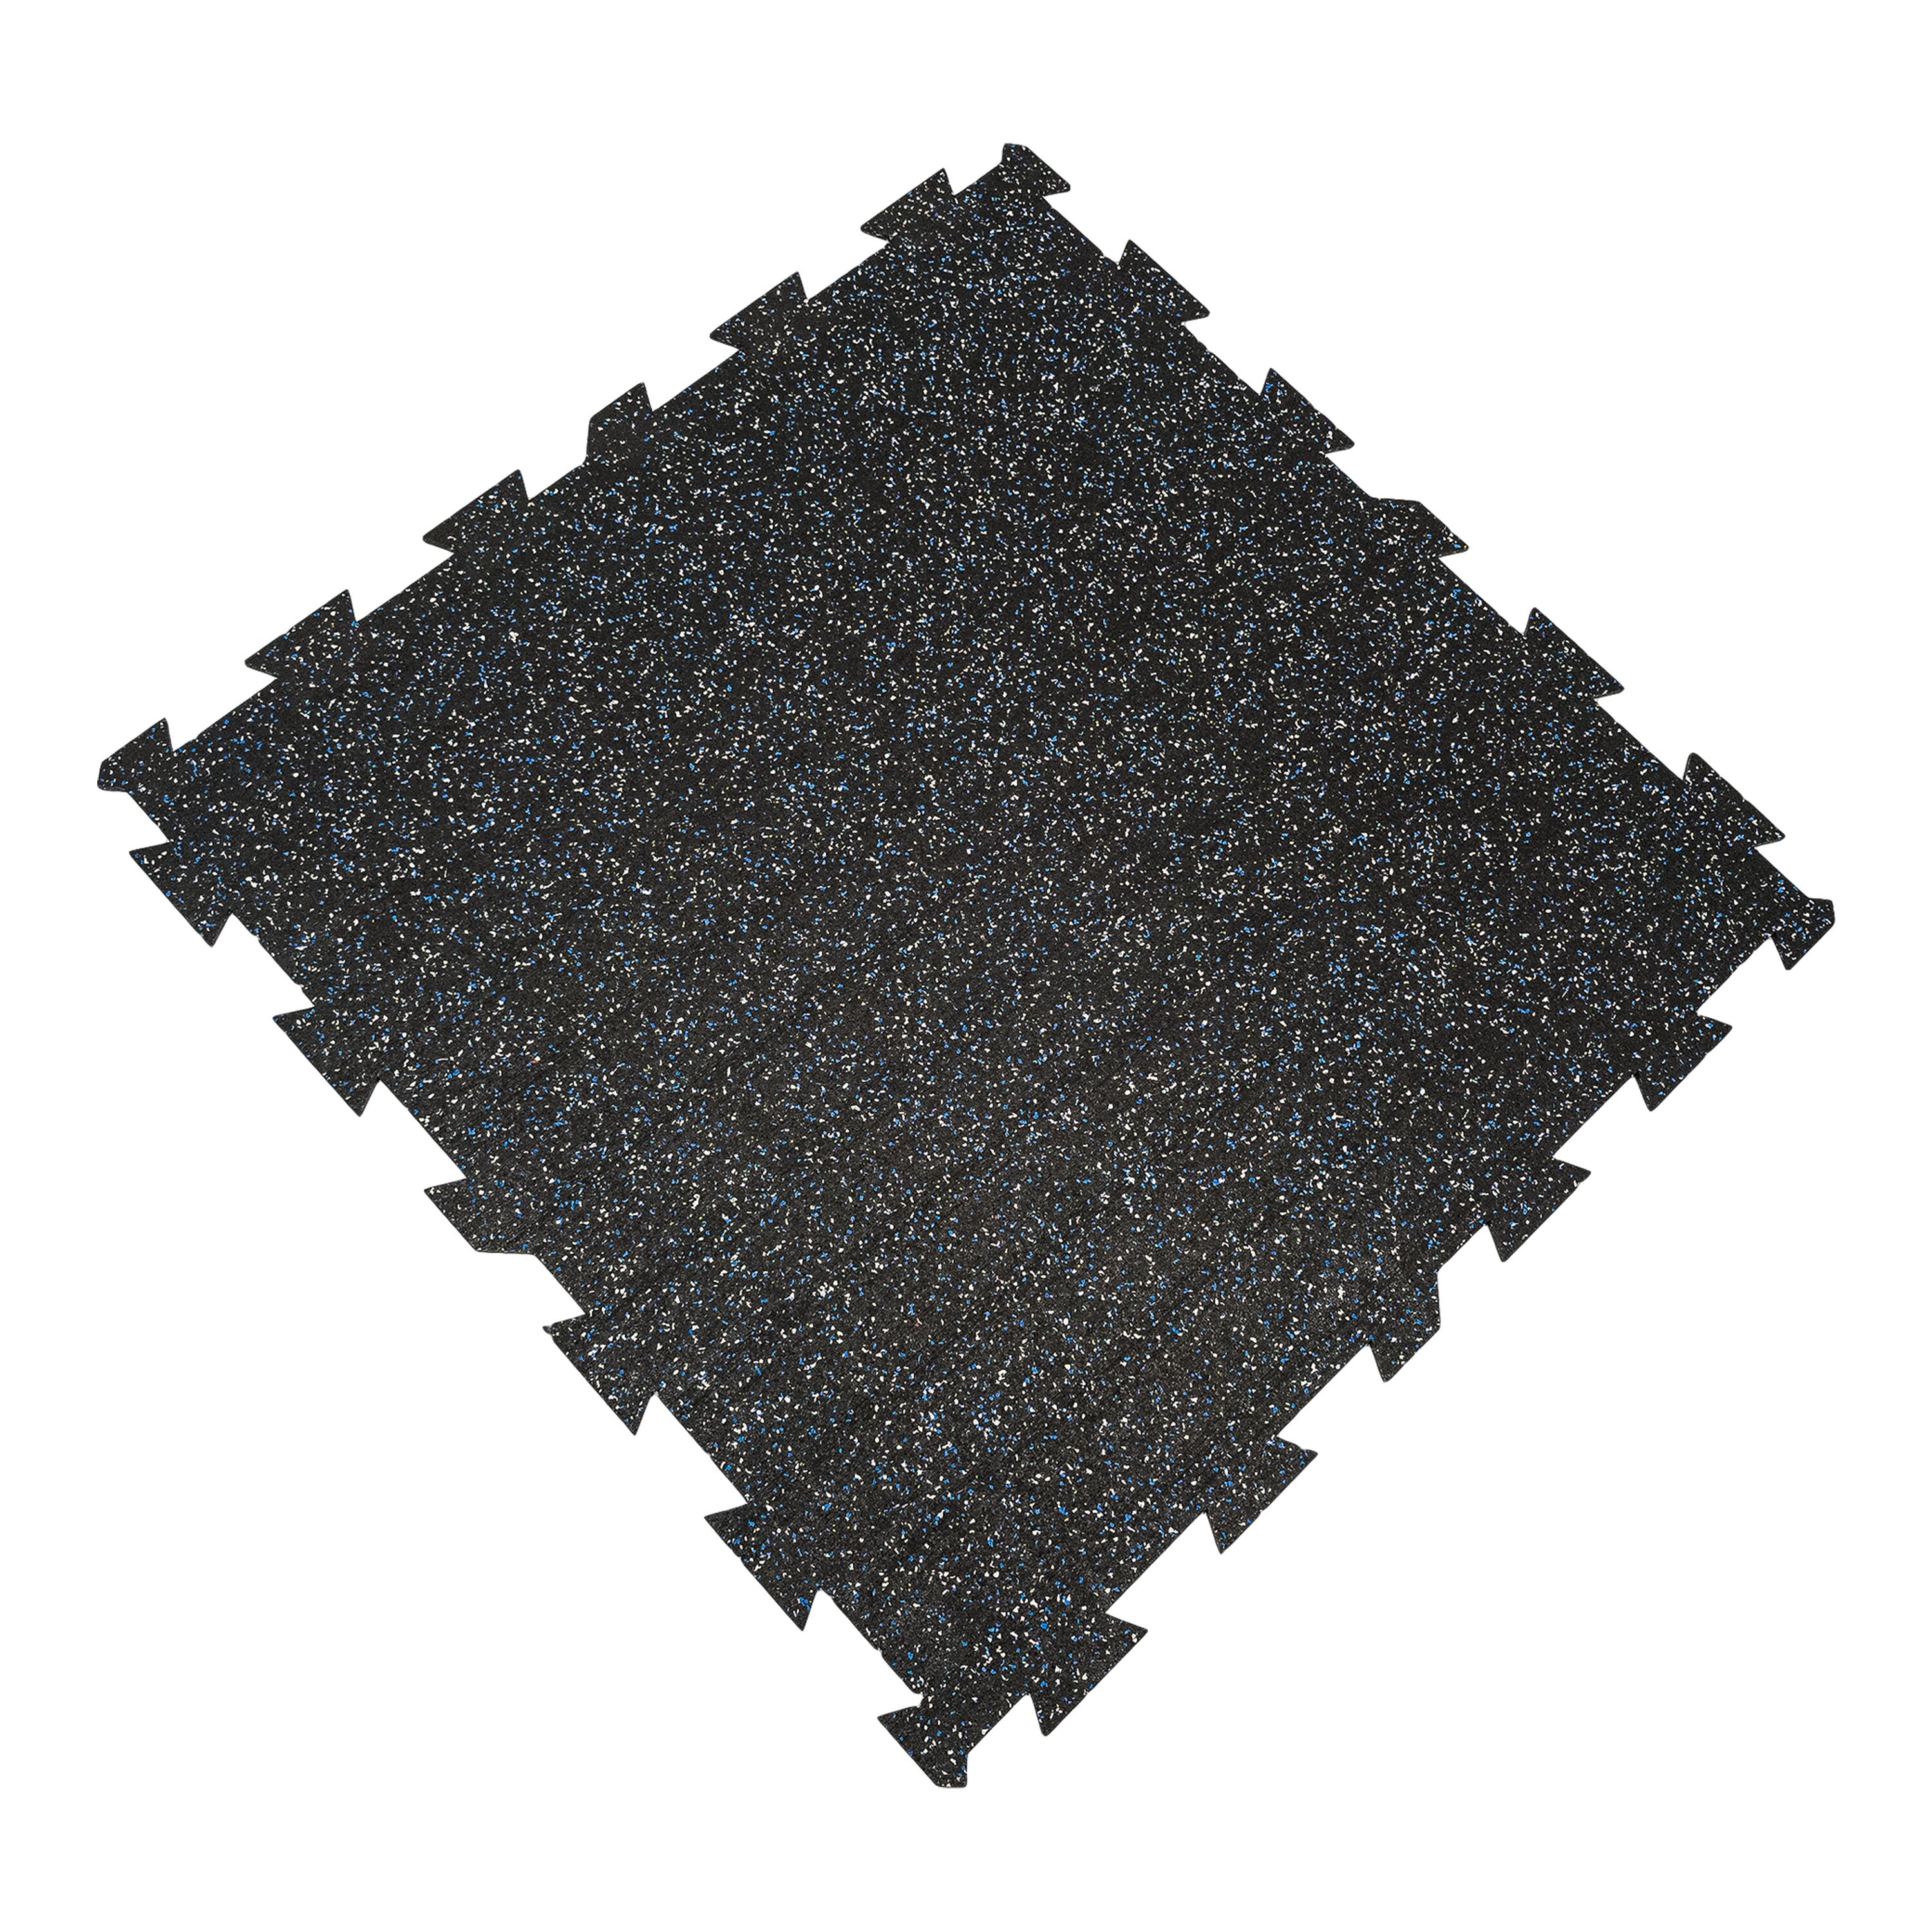 Černo-bílo-modrá gumová puzzle modulová dlažba FLOMA SF1050 FitFlo - délka 100 cm, šířka 100 cm, výška 0,8 cm